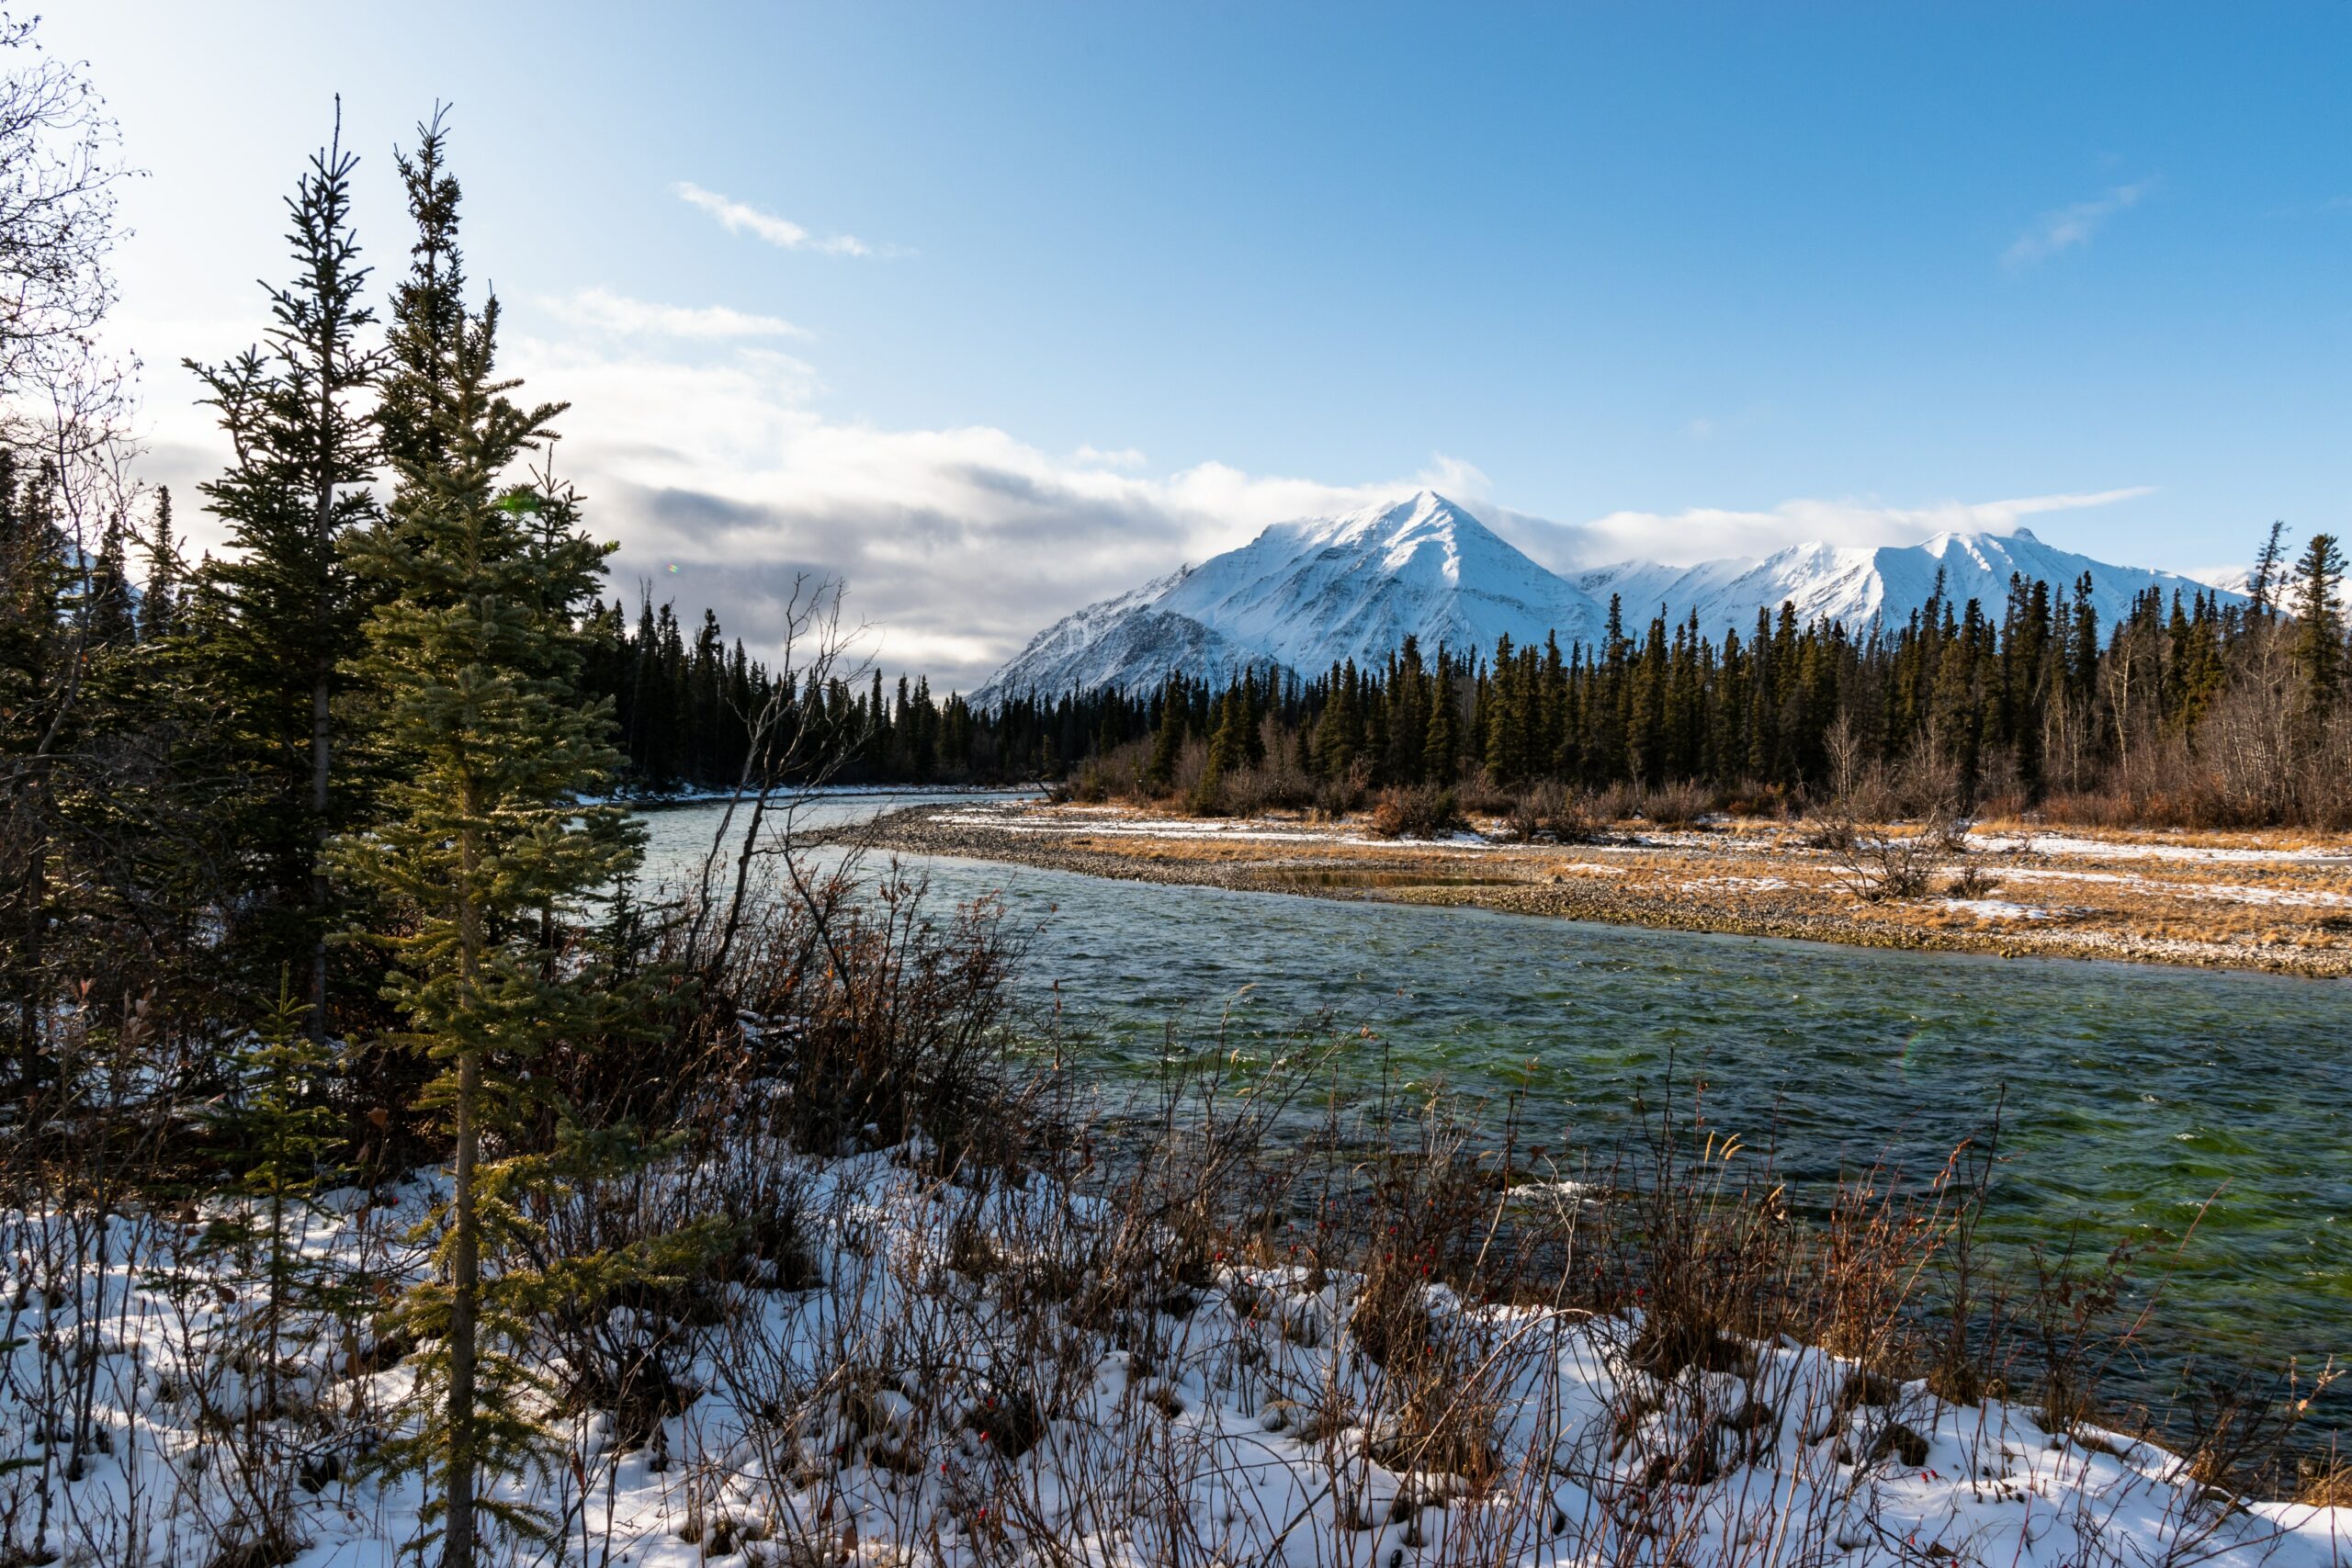 Yukon: A Land of Wild and Wonderful Beauty